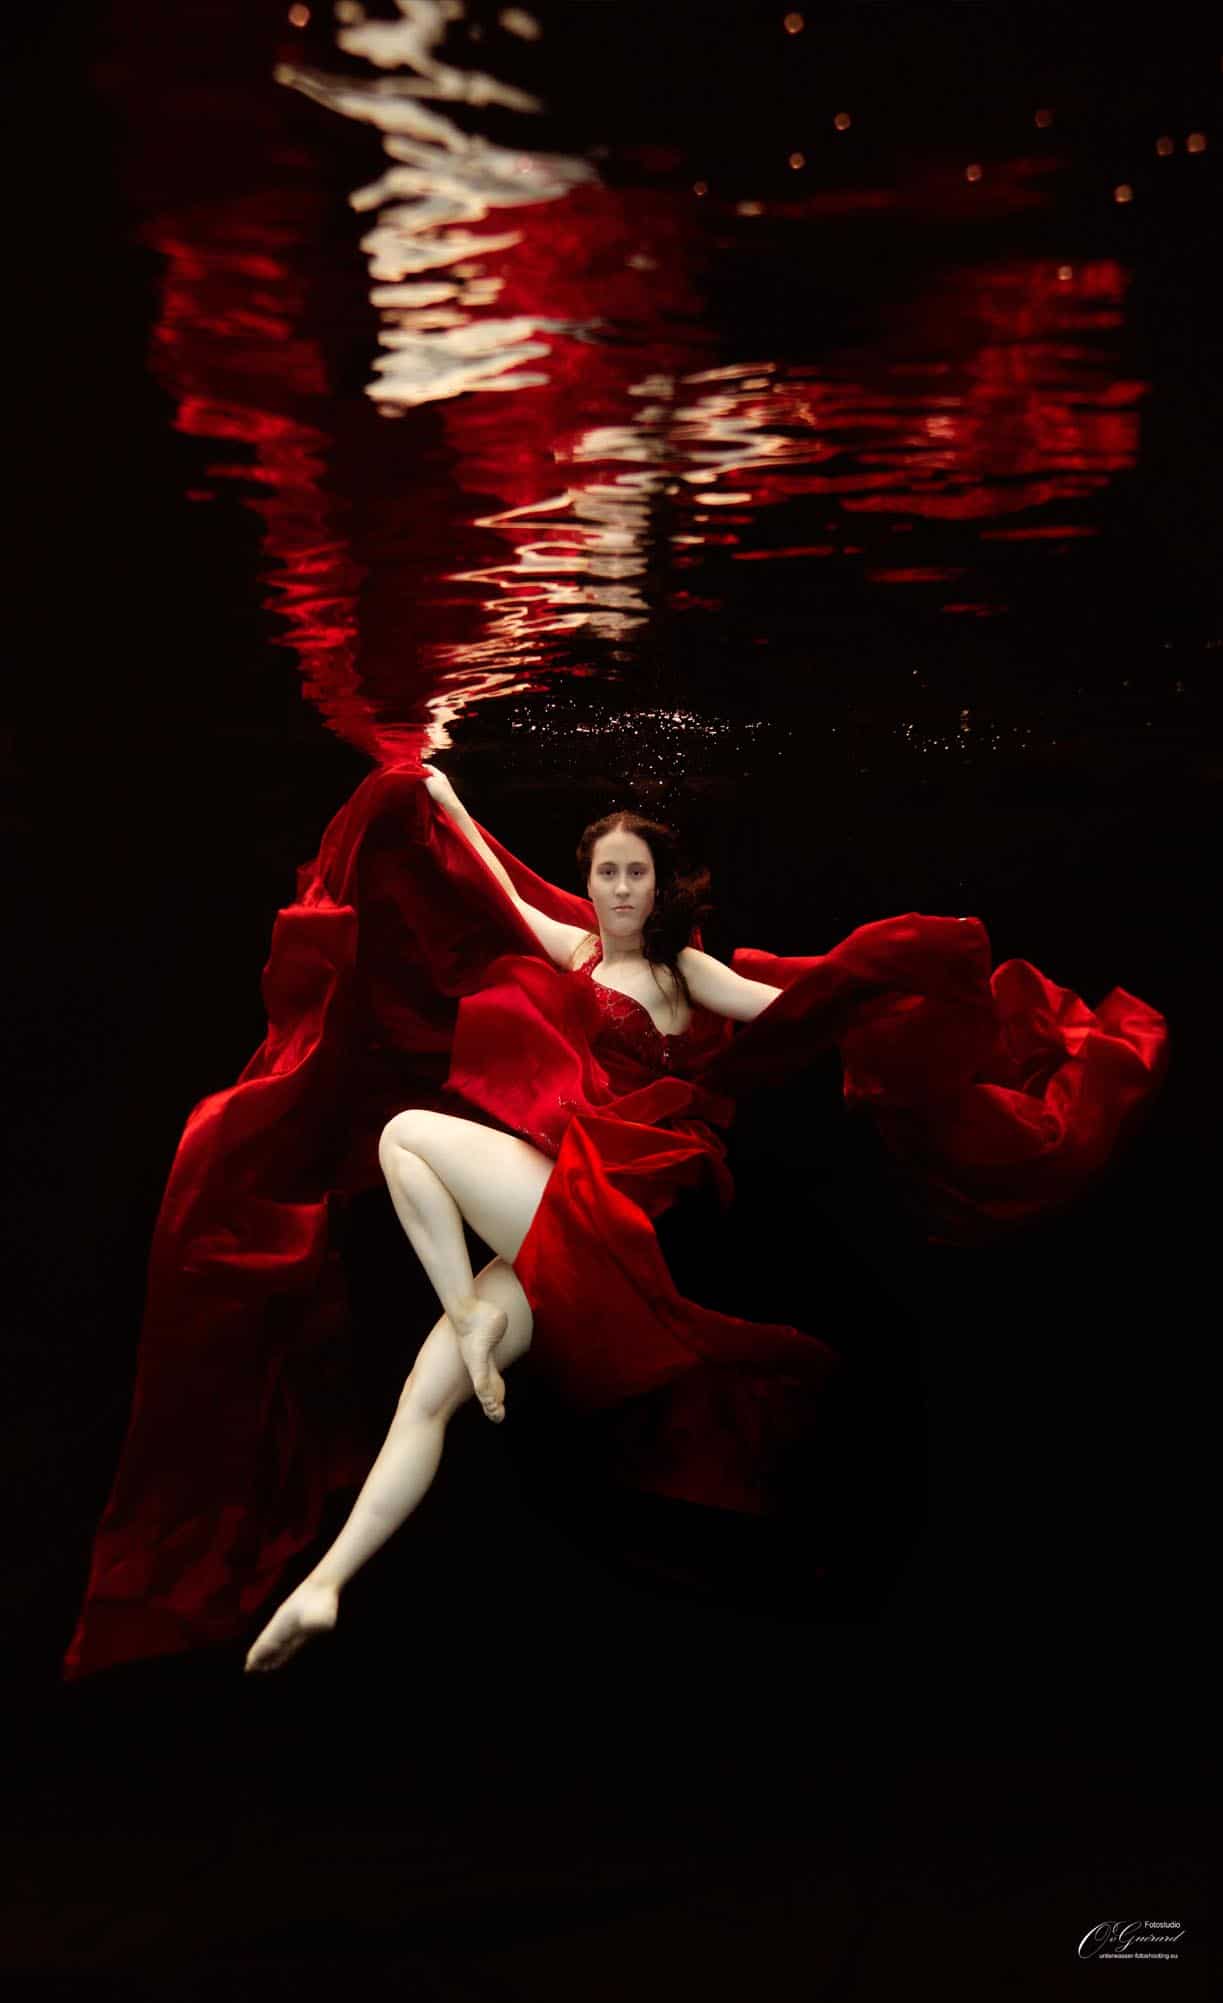 Unterwasser Model-Fotoshooting mit Sarah - Fotograf Oliver von Guerard